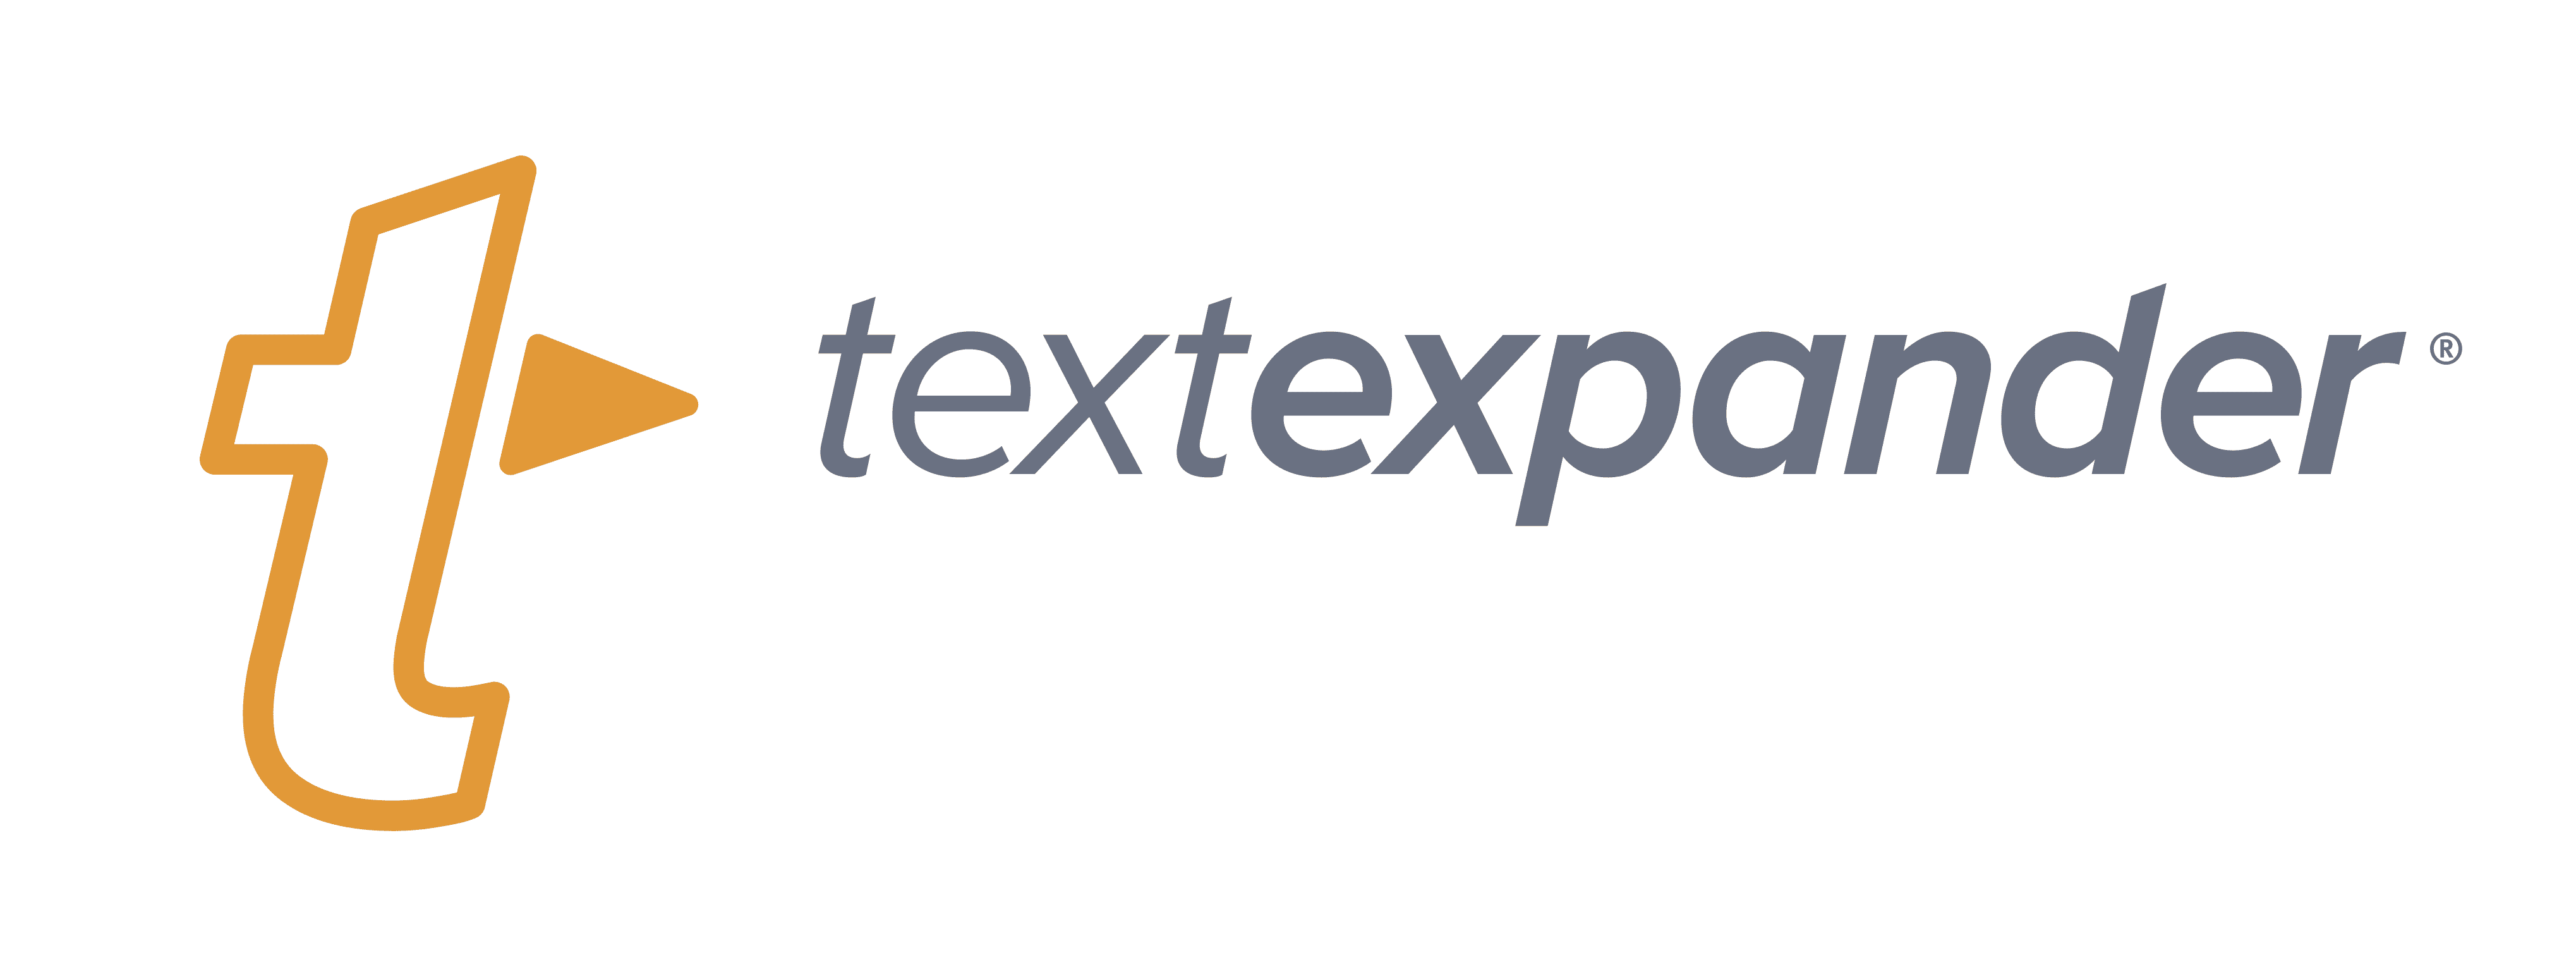 TMO CES 2020 Coverage Sponsor: TextExpander